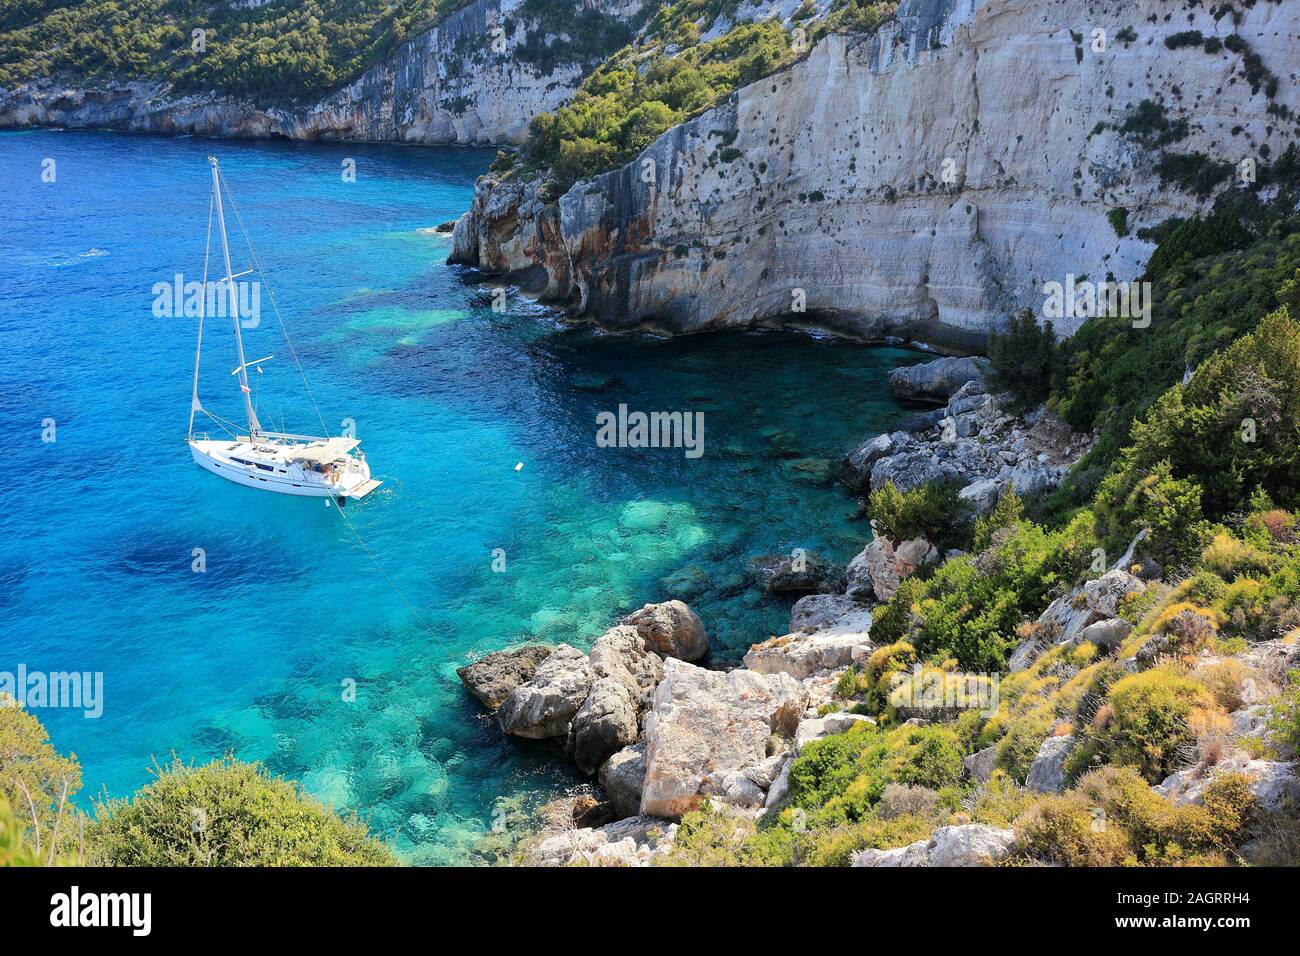 Capo Skinari. Costa nord di Zante o isola di Zante, Mar Ionio, Grecia. Foto Stock